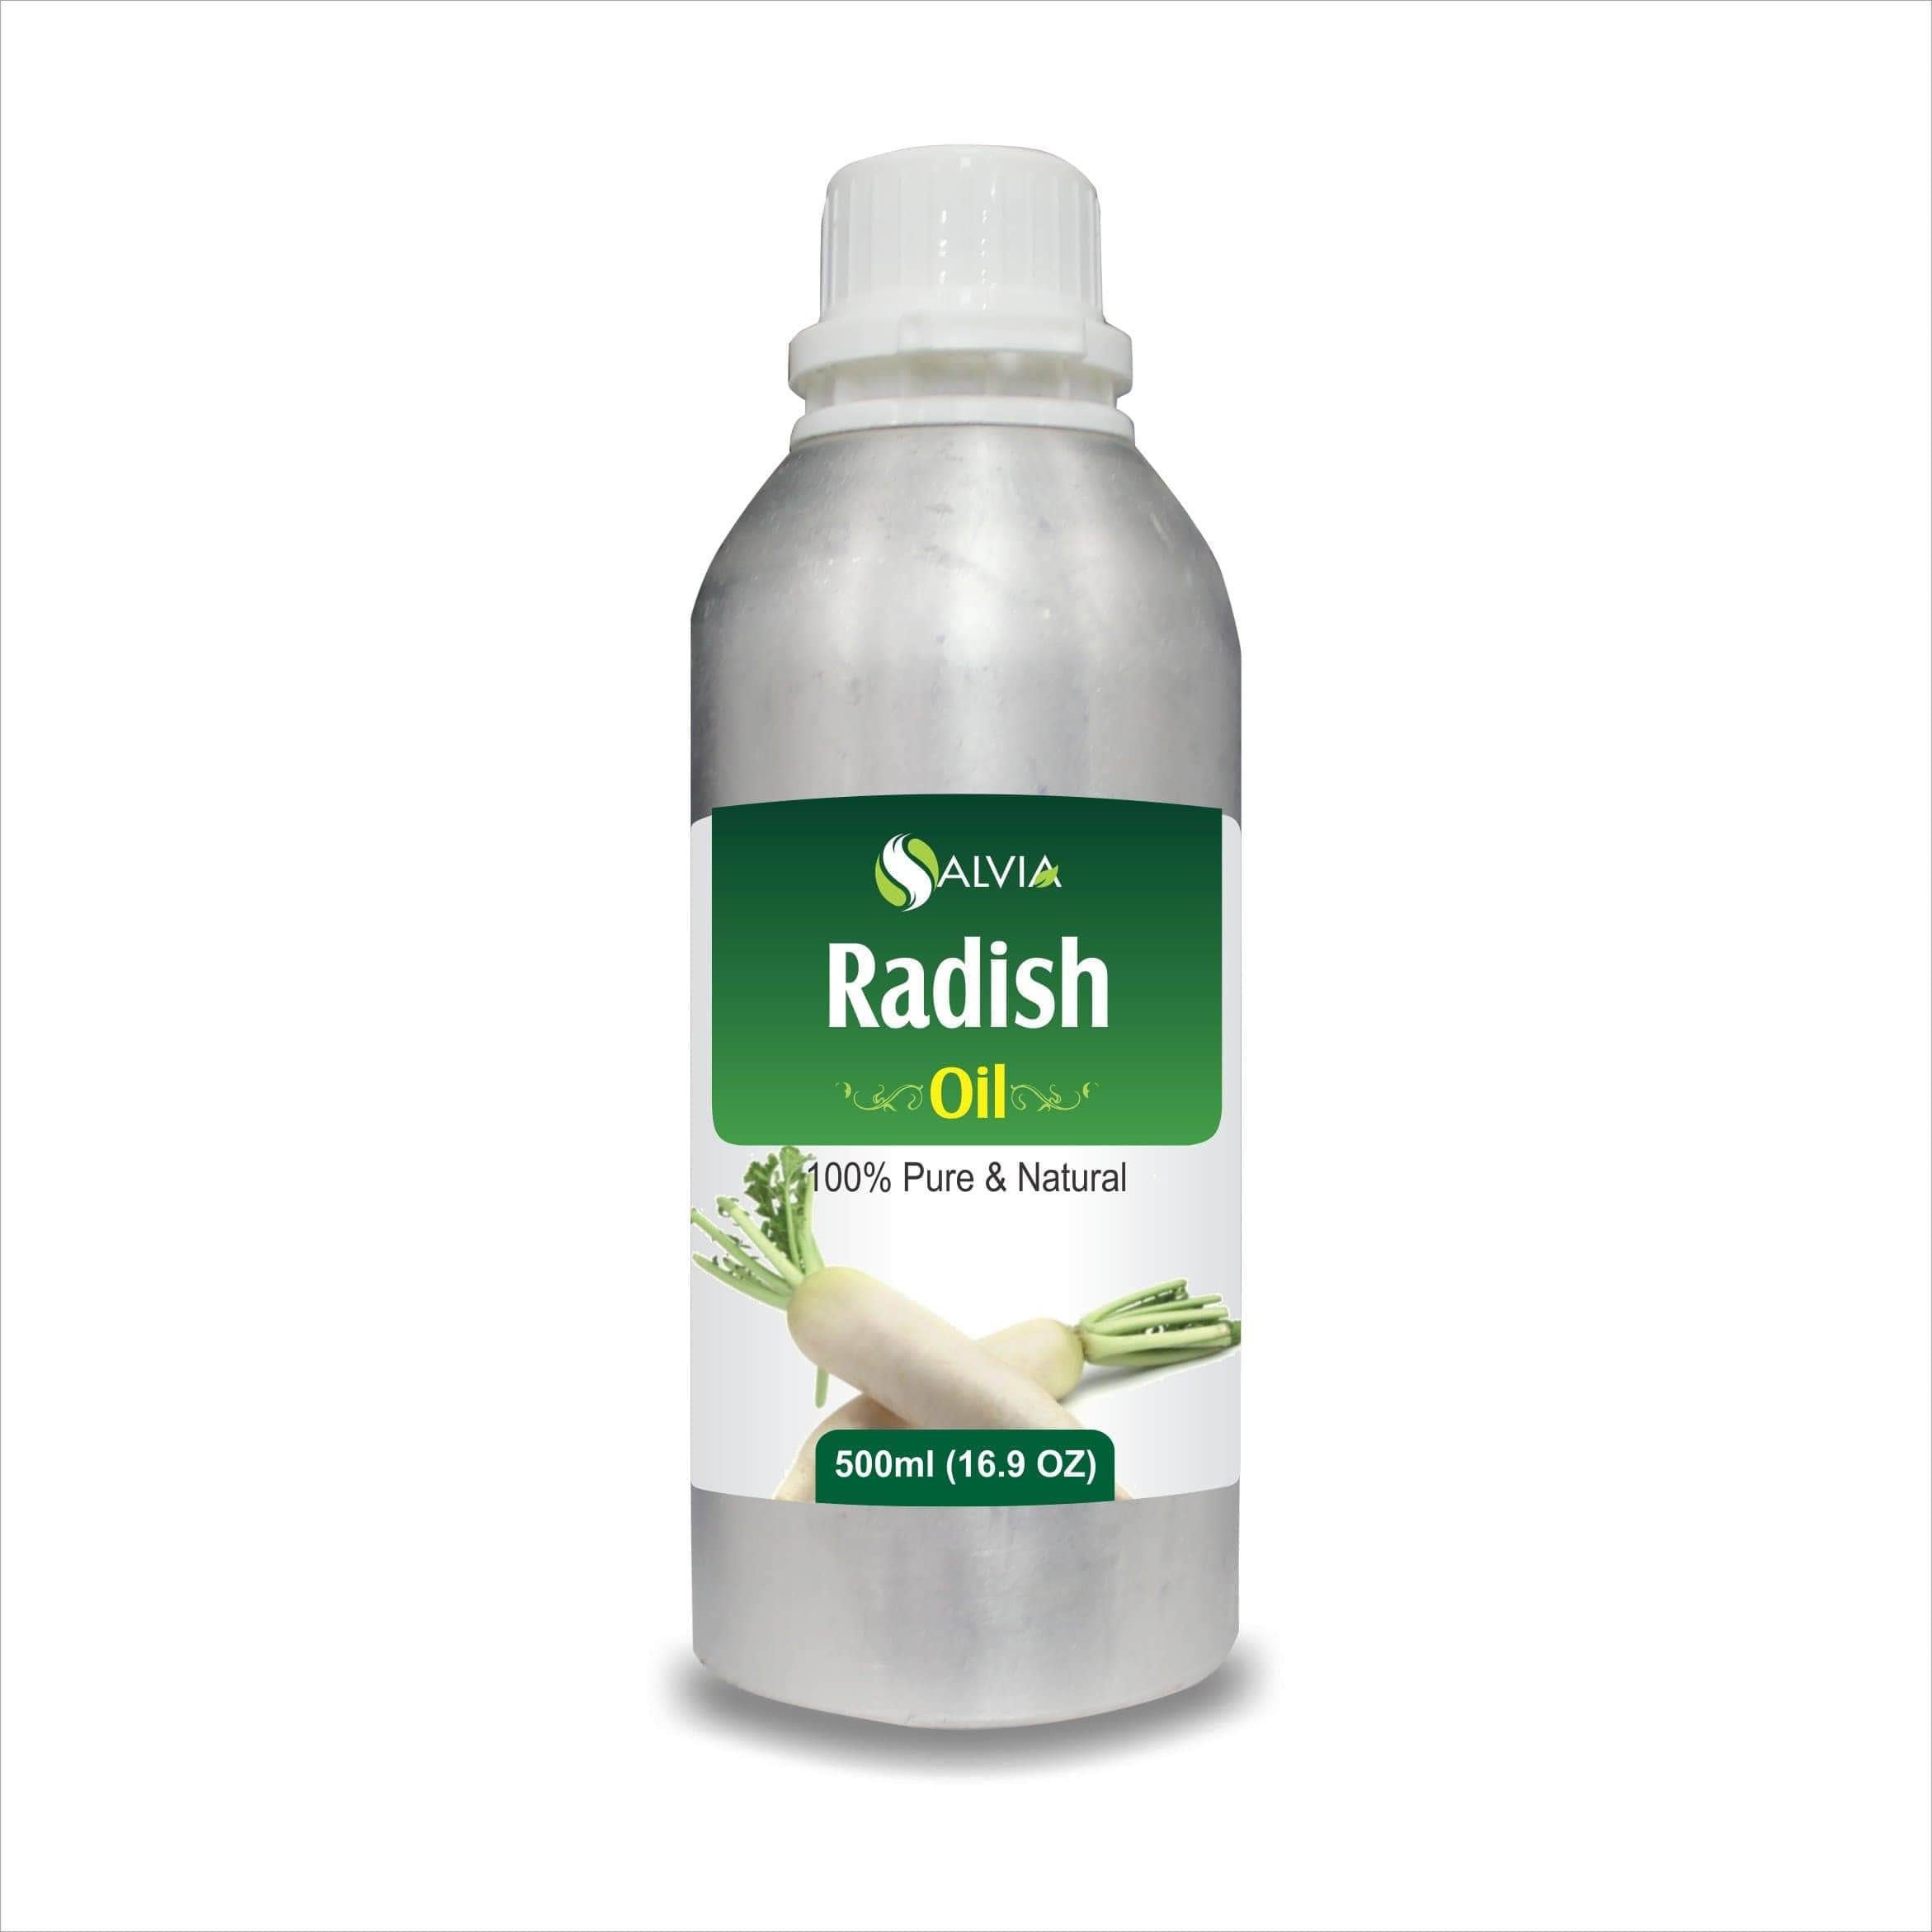 radish oil for hair